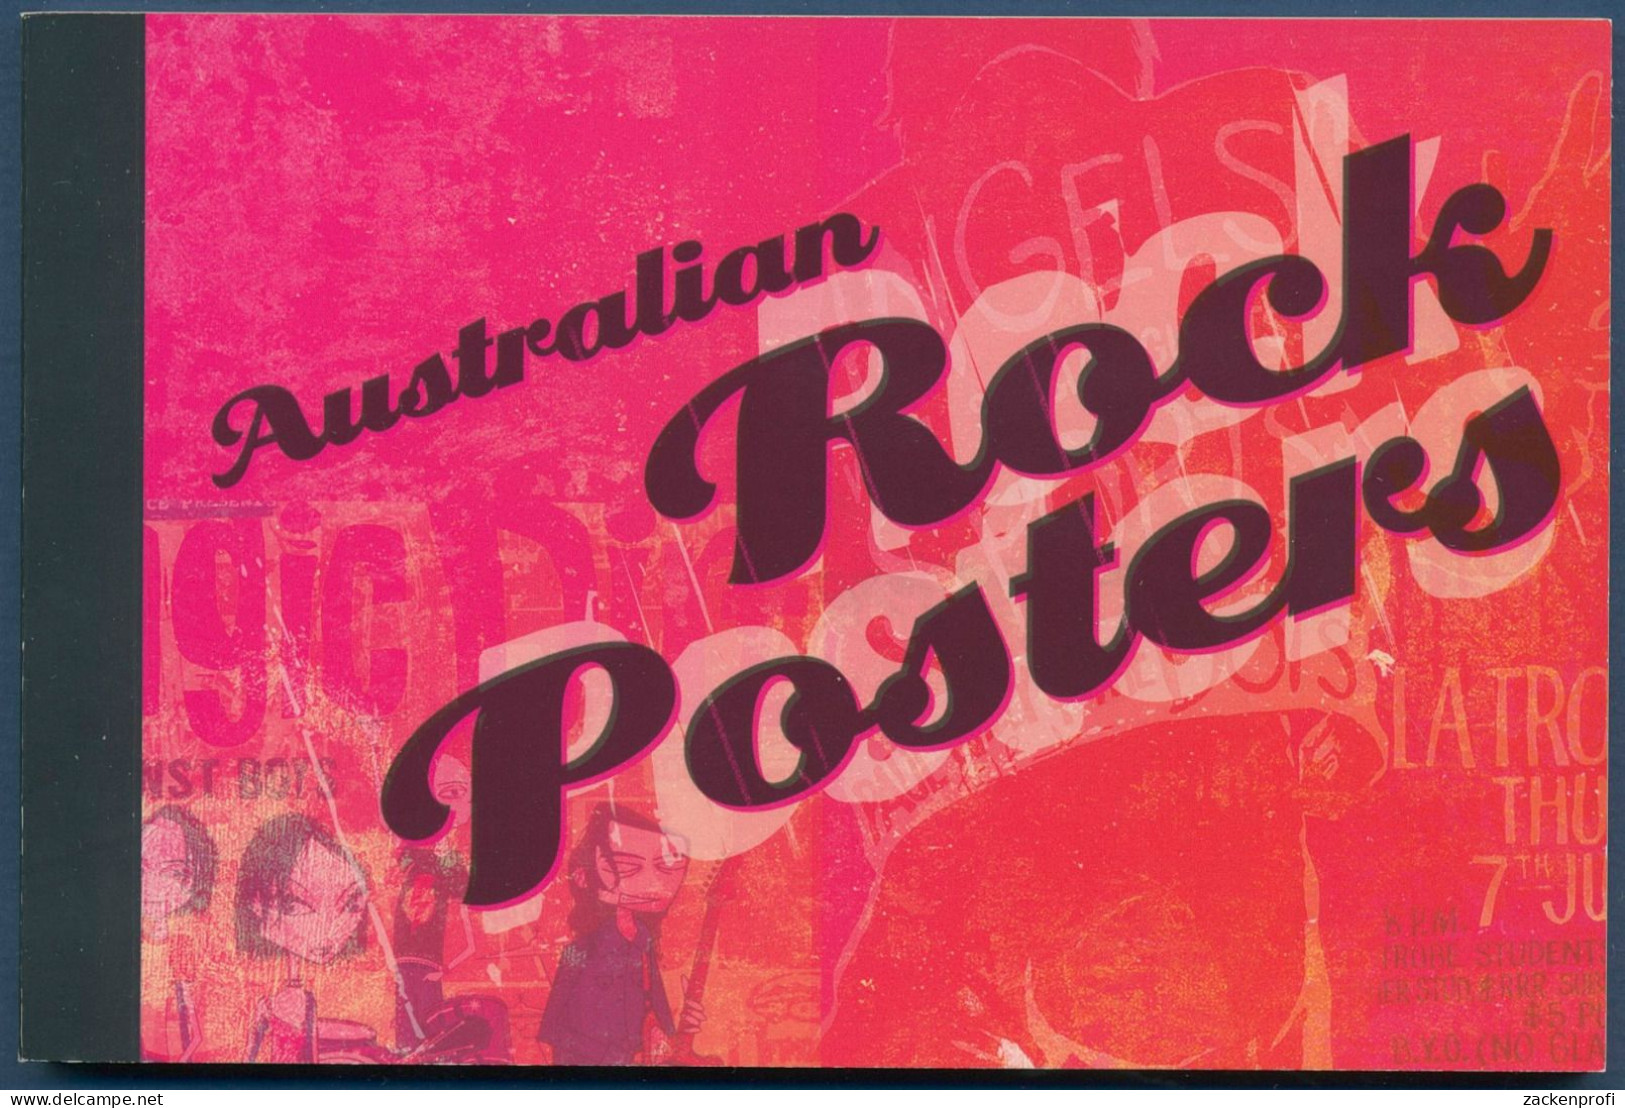 Australien 2006 Poster Rockkonzerte Rolling Stones MH 250 Postfrisch (C40390) - Libretti